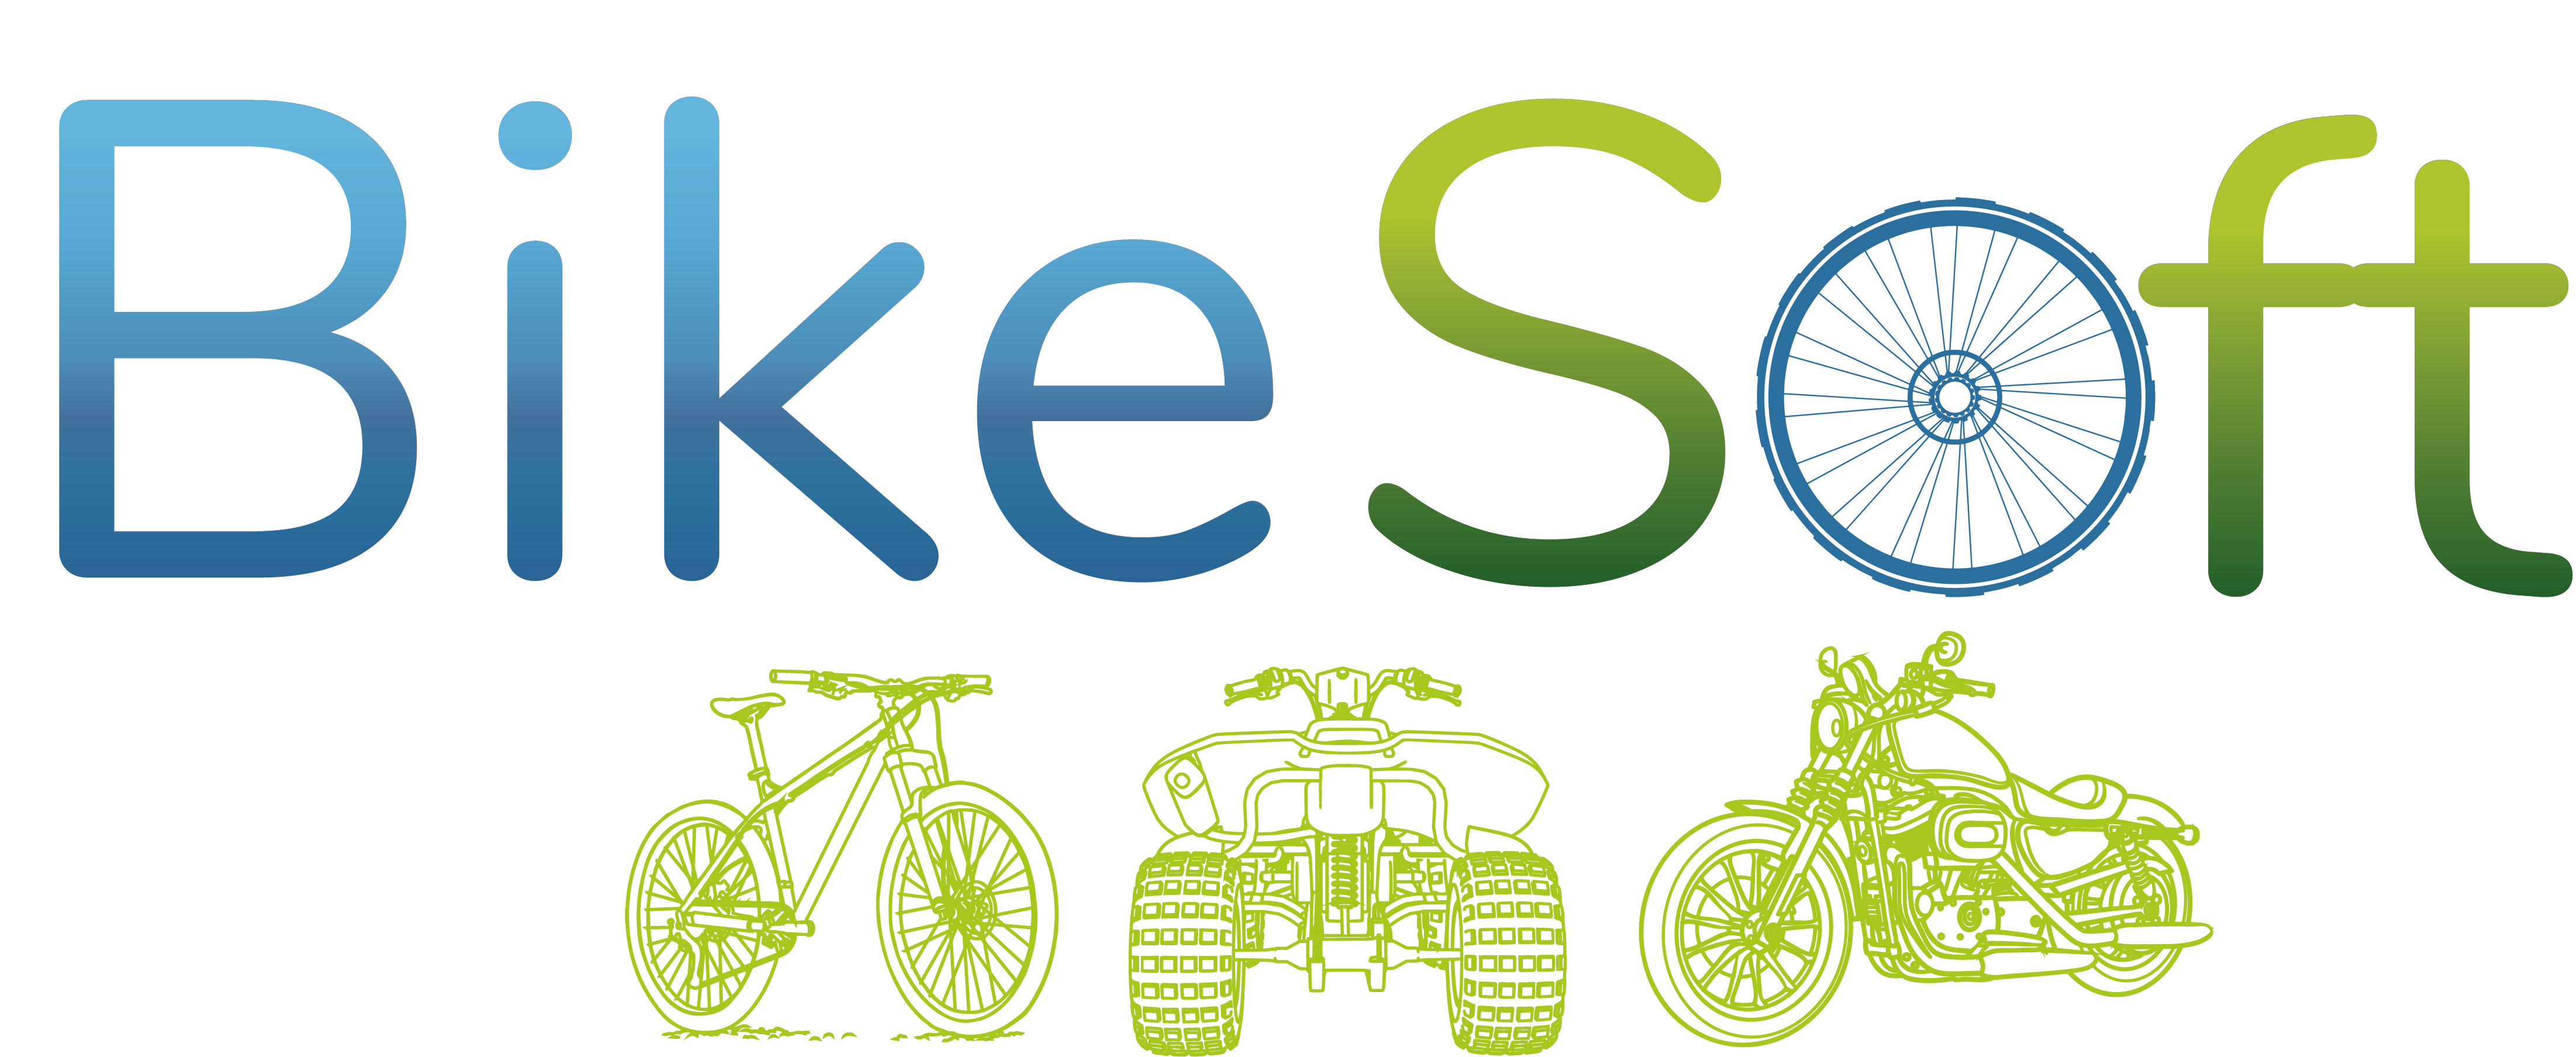 BikeSoft